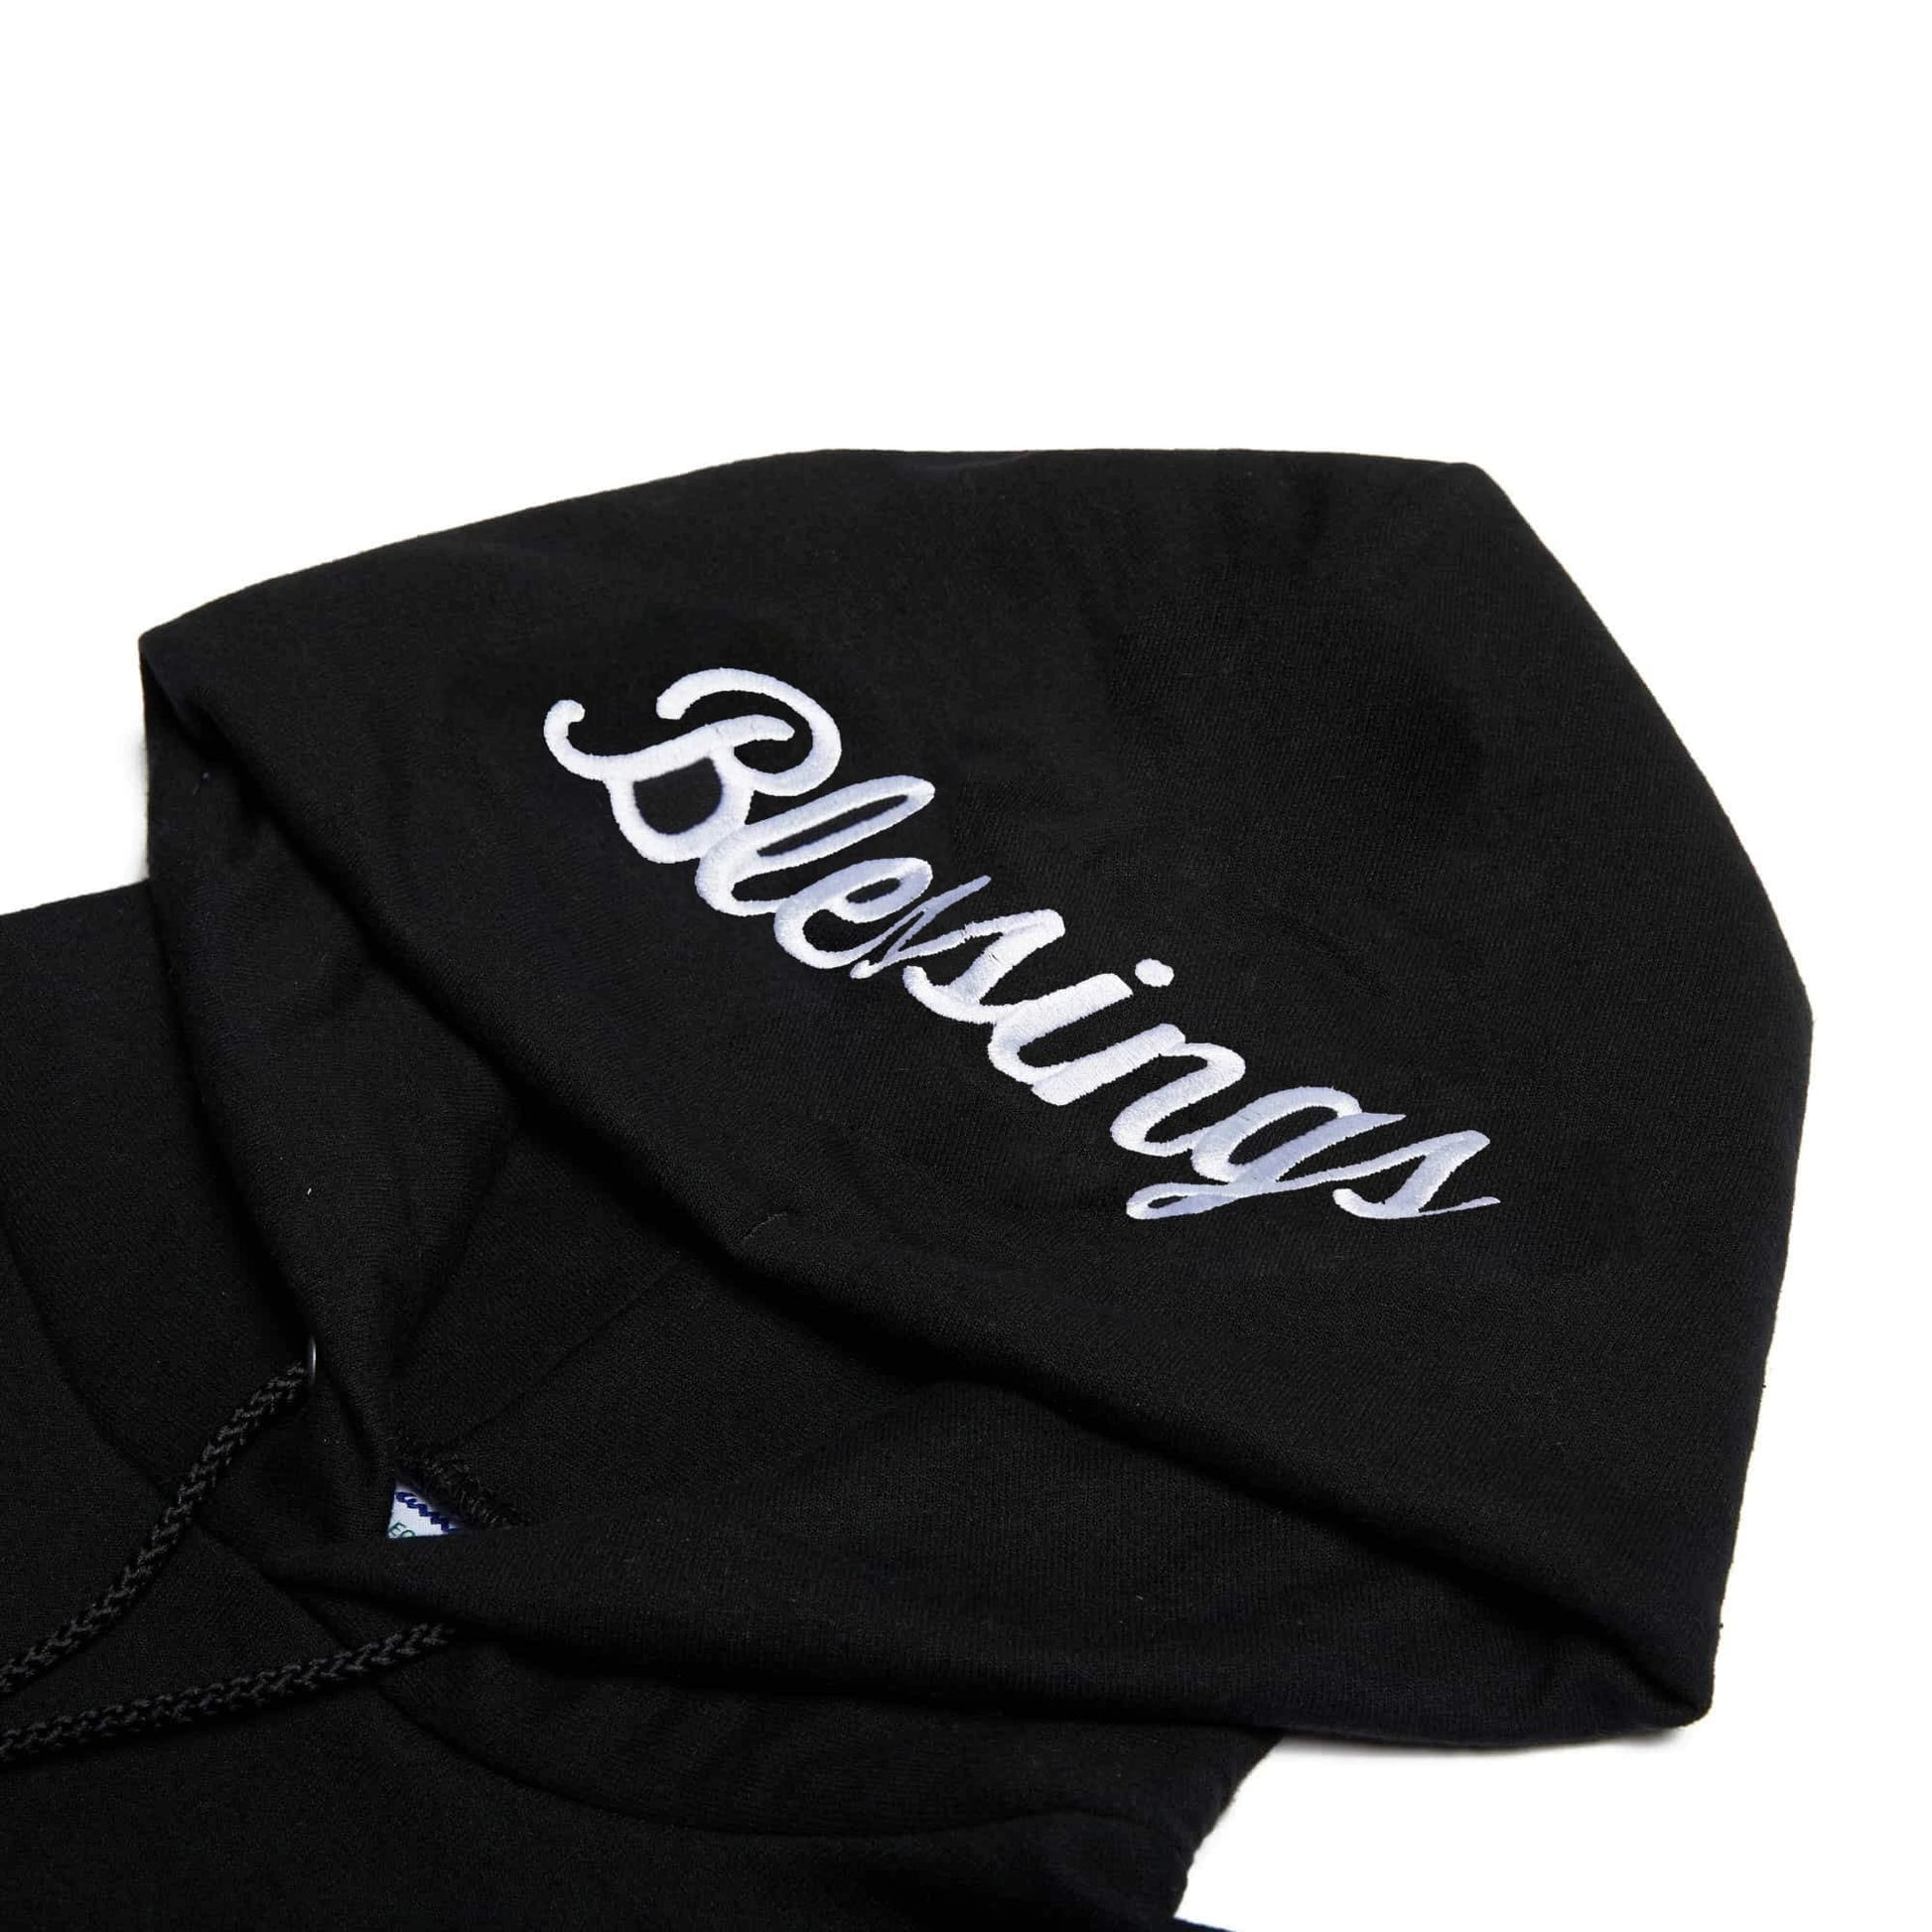 Blessings champion black hoodie hood detail Lecrae